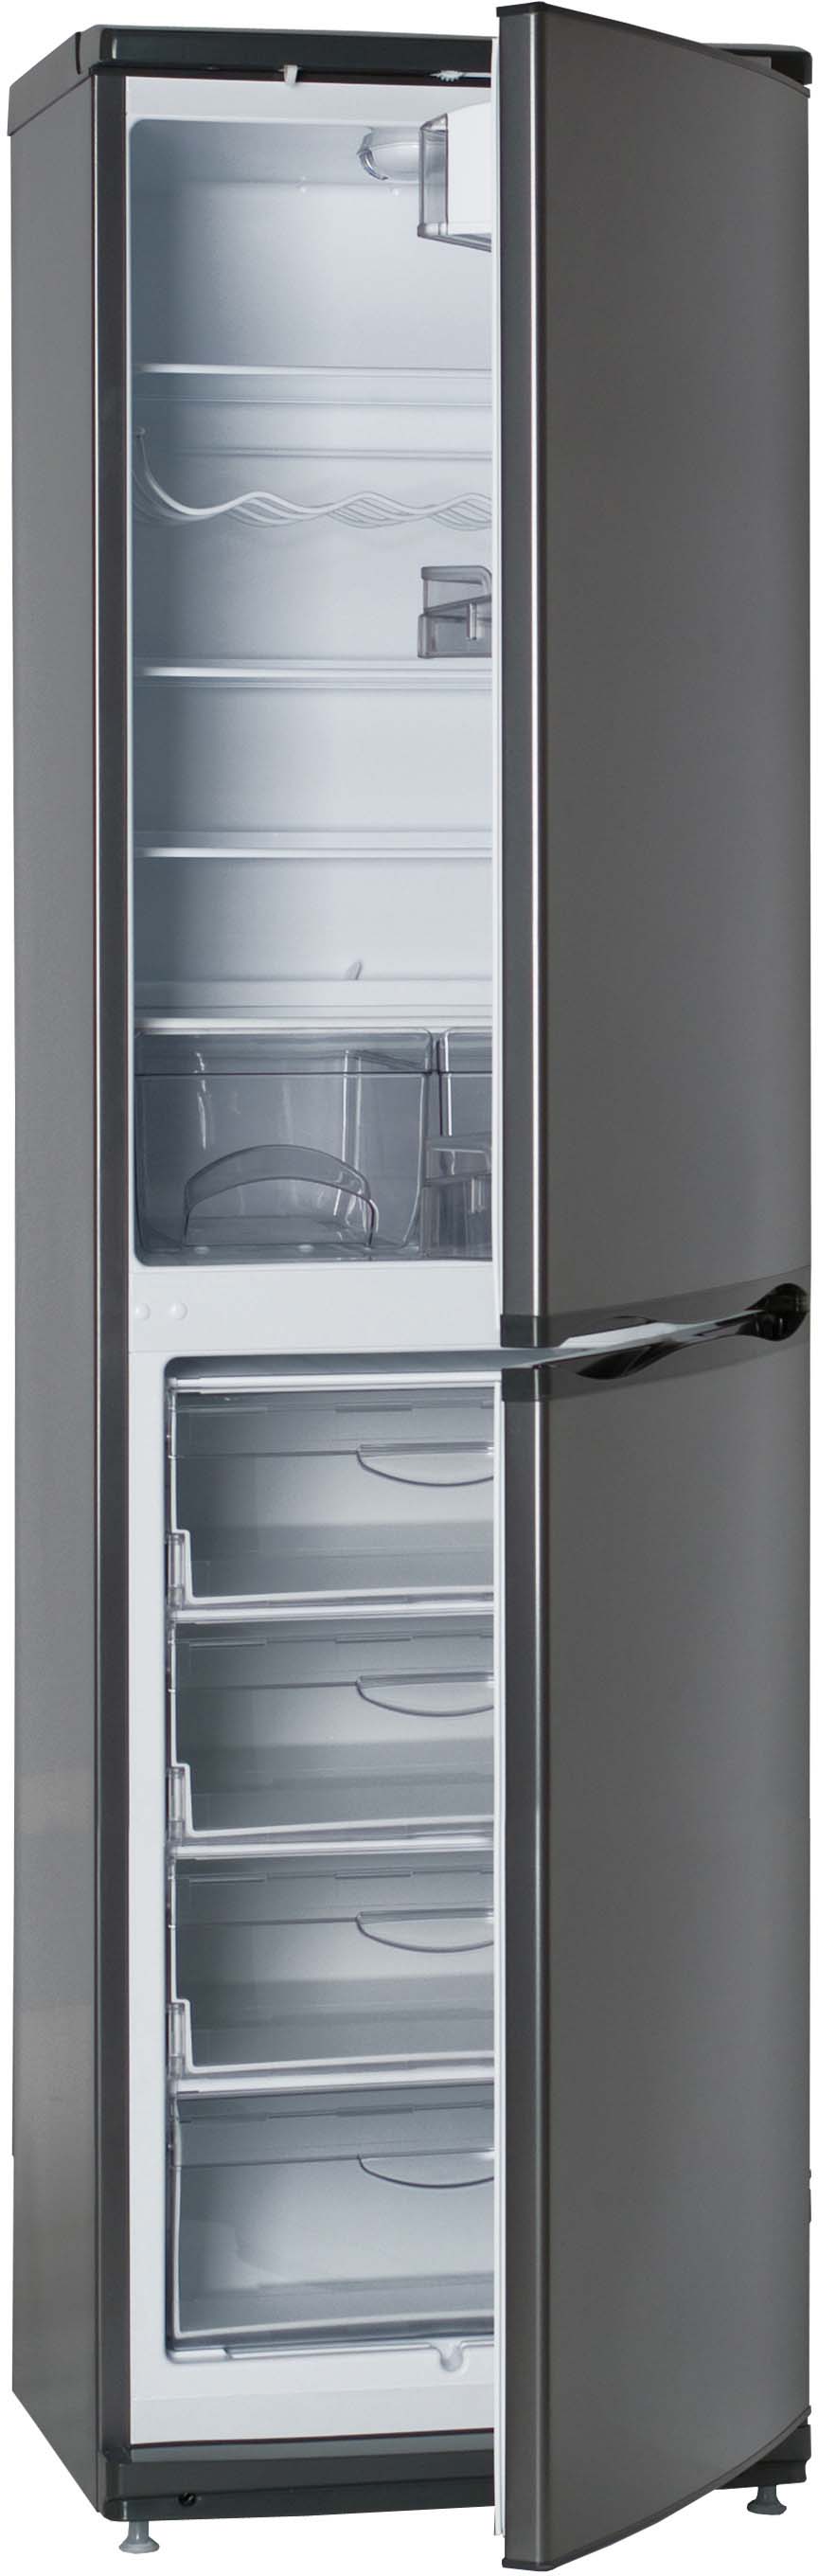 Купит холодильник атлант 6025. Холодильник ATLANT хм 6025. Холодильник ATLANT 6025-060. Холодильник Атлант 6025 мокрый асфальт. Холодильник Атлант хм 6025-060 мокрый асфальт.